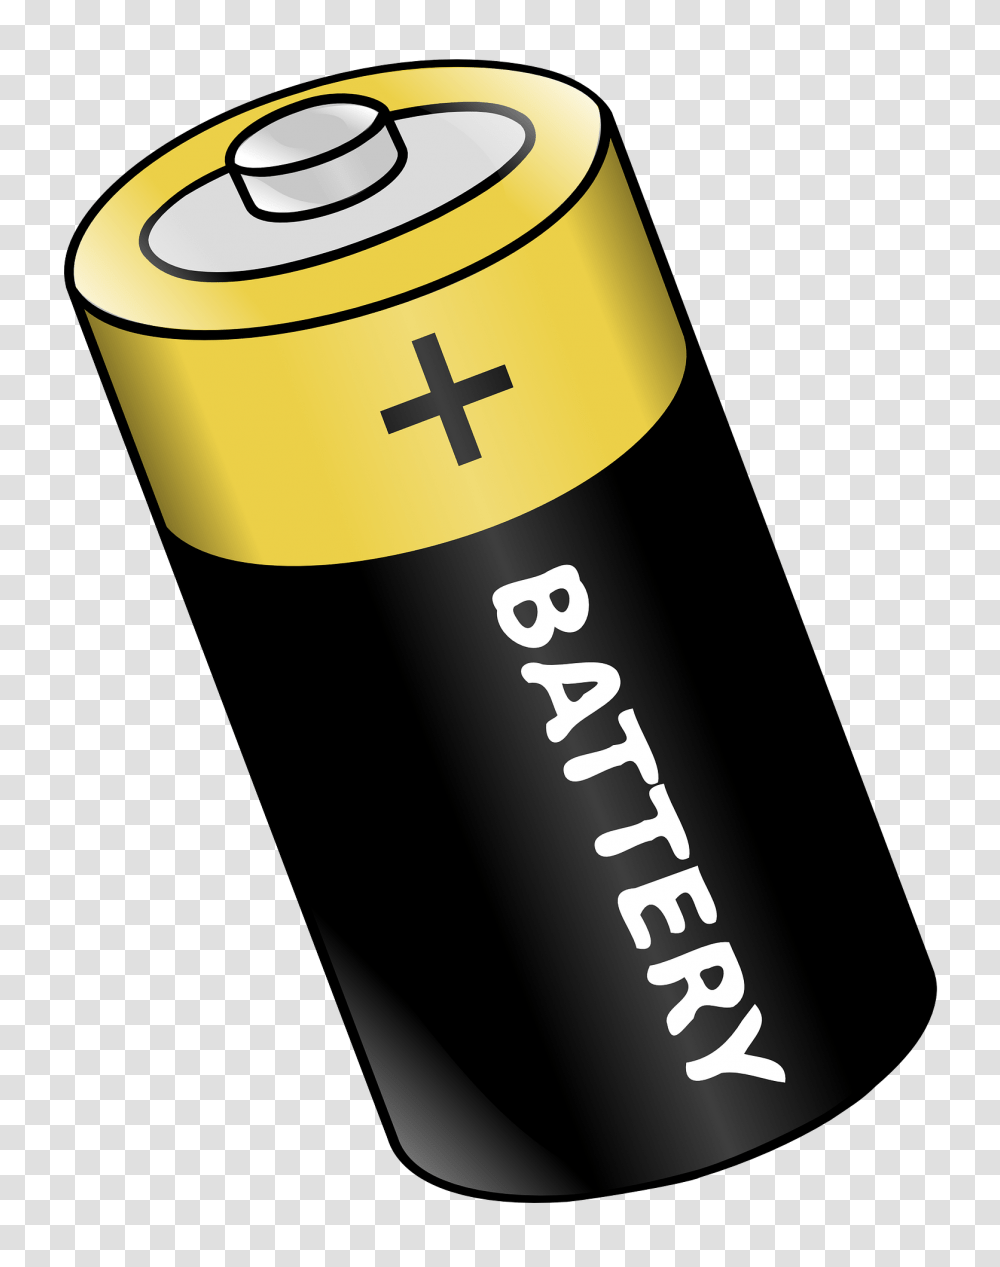 Battery Image, Cylinder, Shaker, Bottle Transparent Png